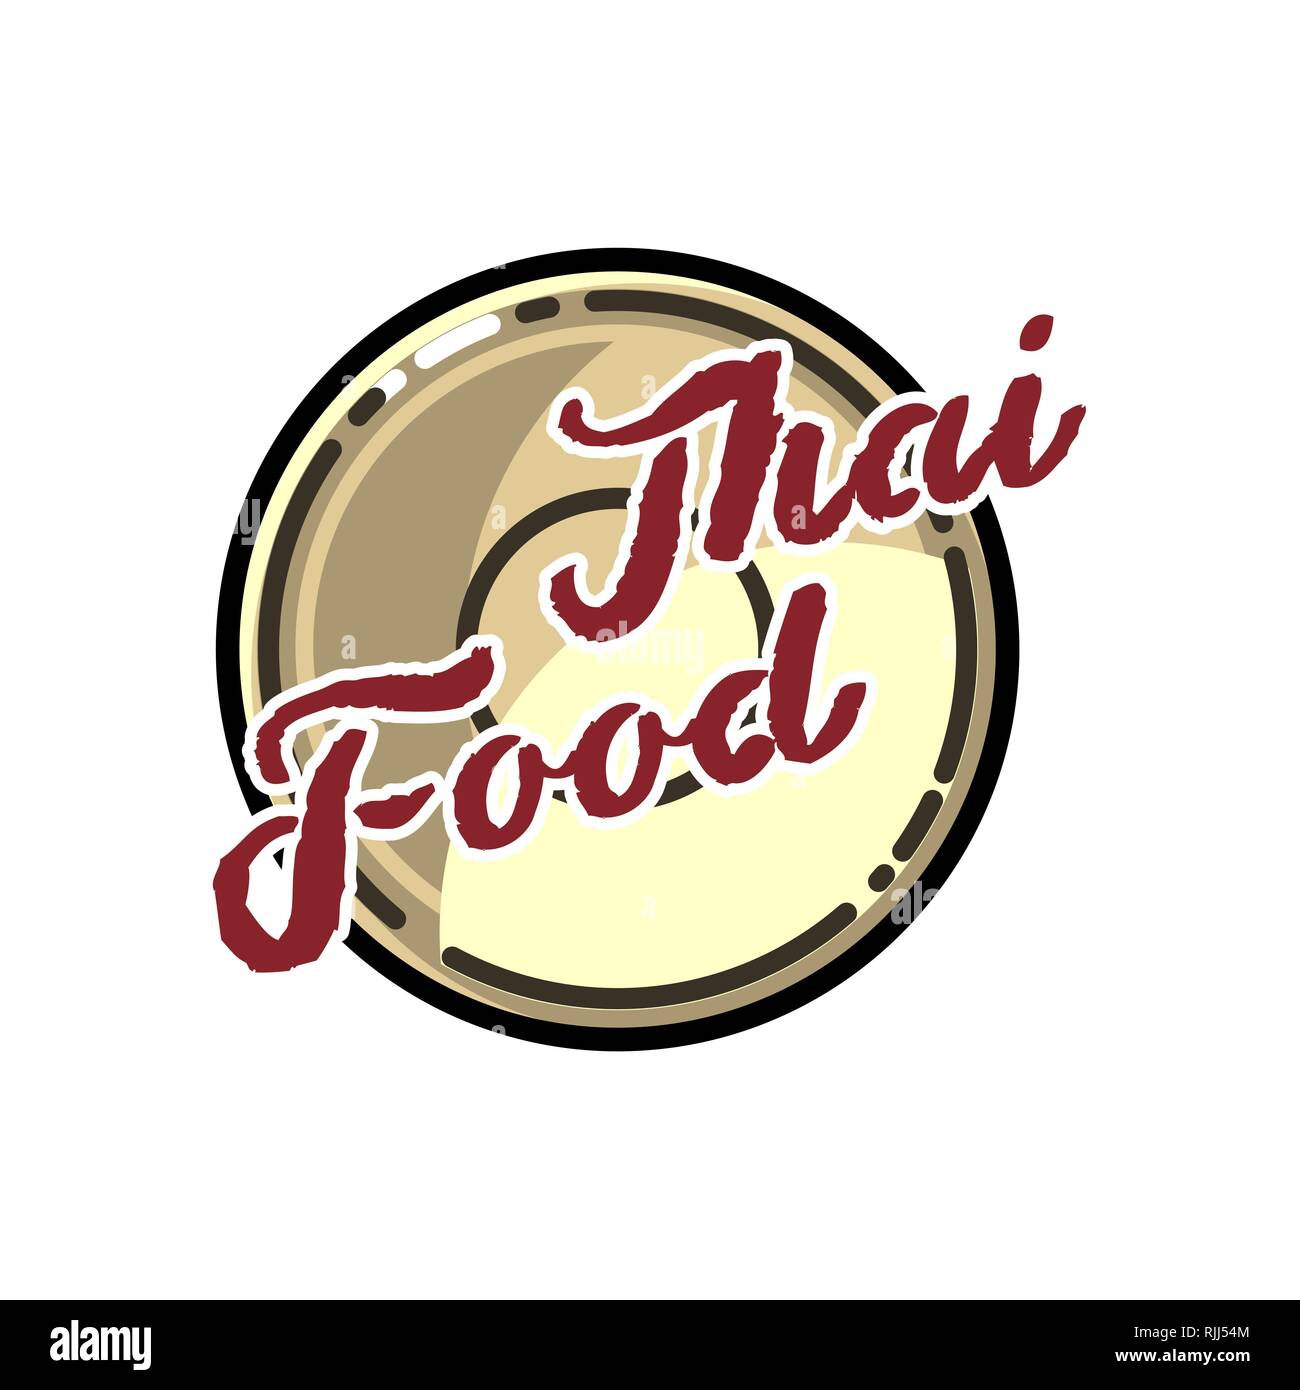 Color vintage thai food emblem, logo, badges, banners, emblem for asian food restaurant. Vector illustration. Stock Vector